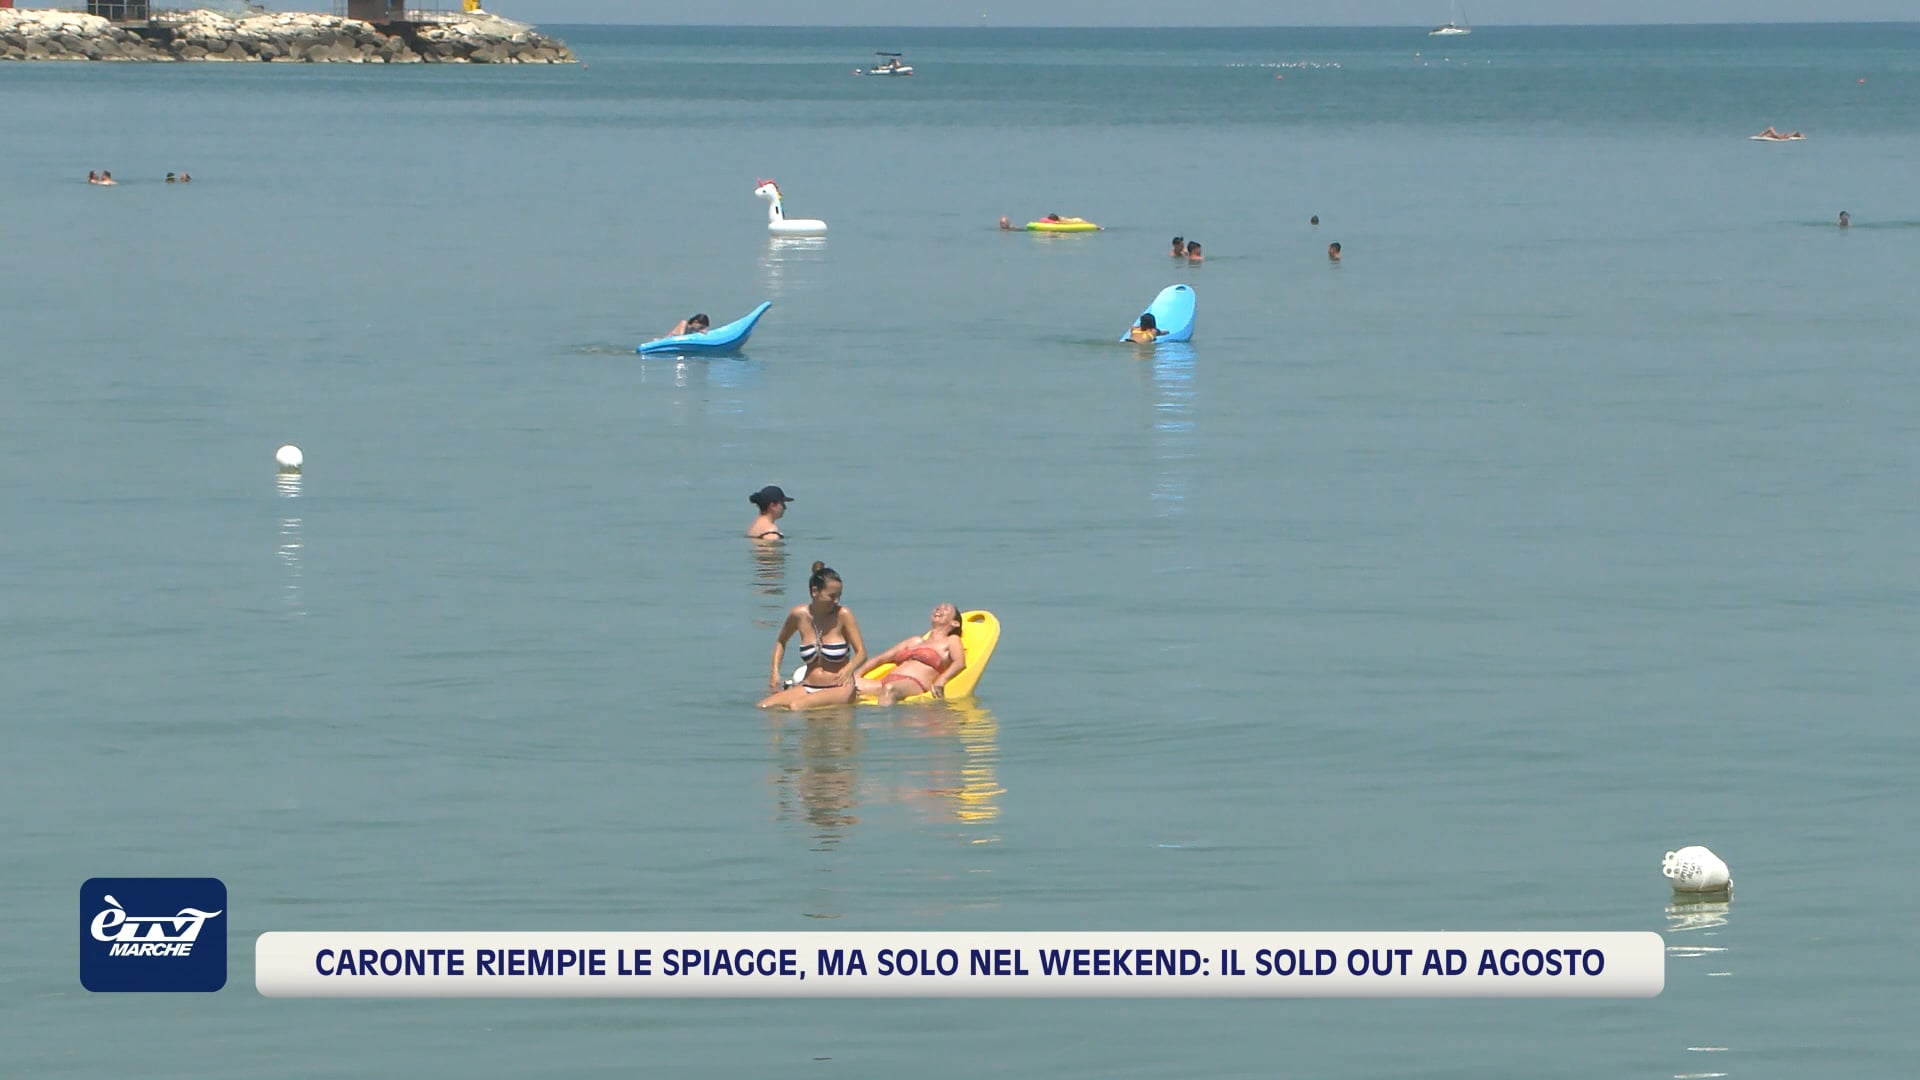 Caronte riempie le spiagge, ma solo nel weekend: il sold out ad agosto - VIDEO